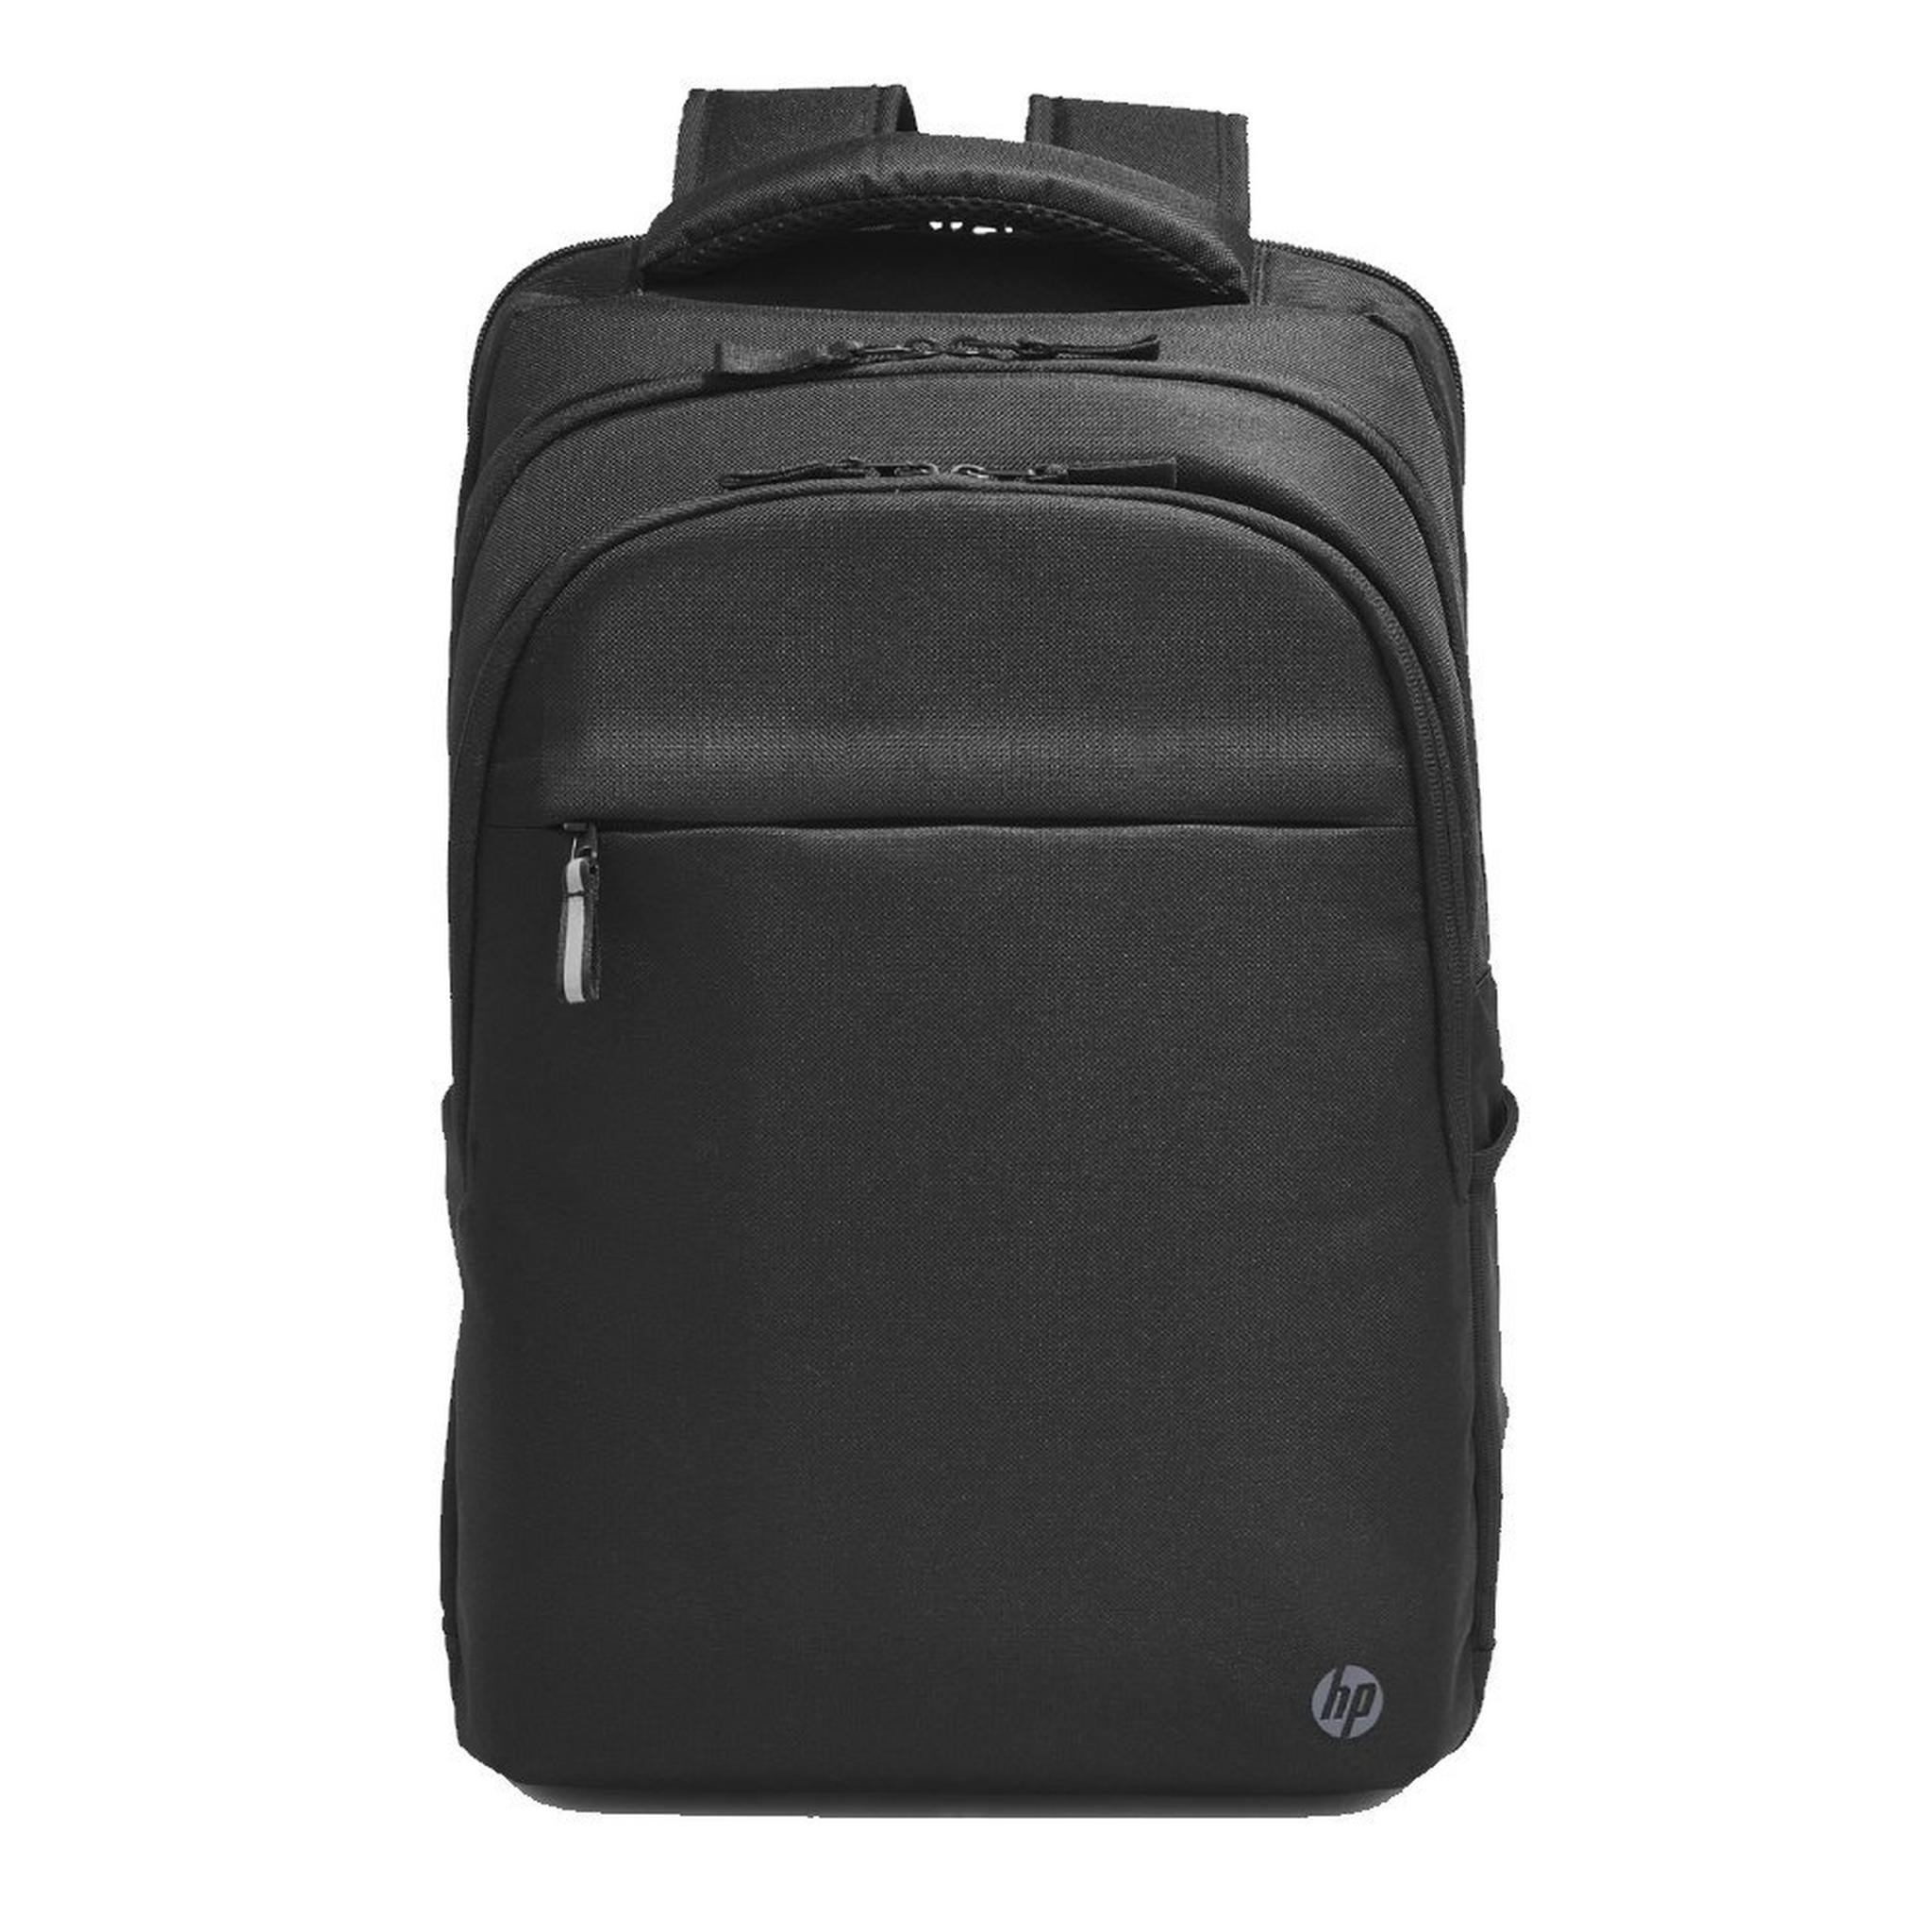 حقيبة ظهر HP بروفيشيونال للابتوب مقاس 17.3 بوصة - أسود